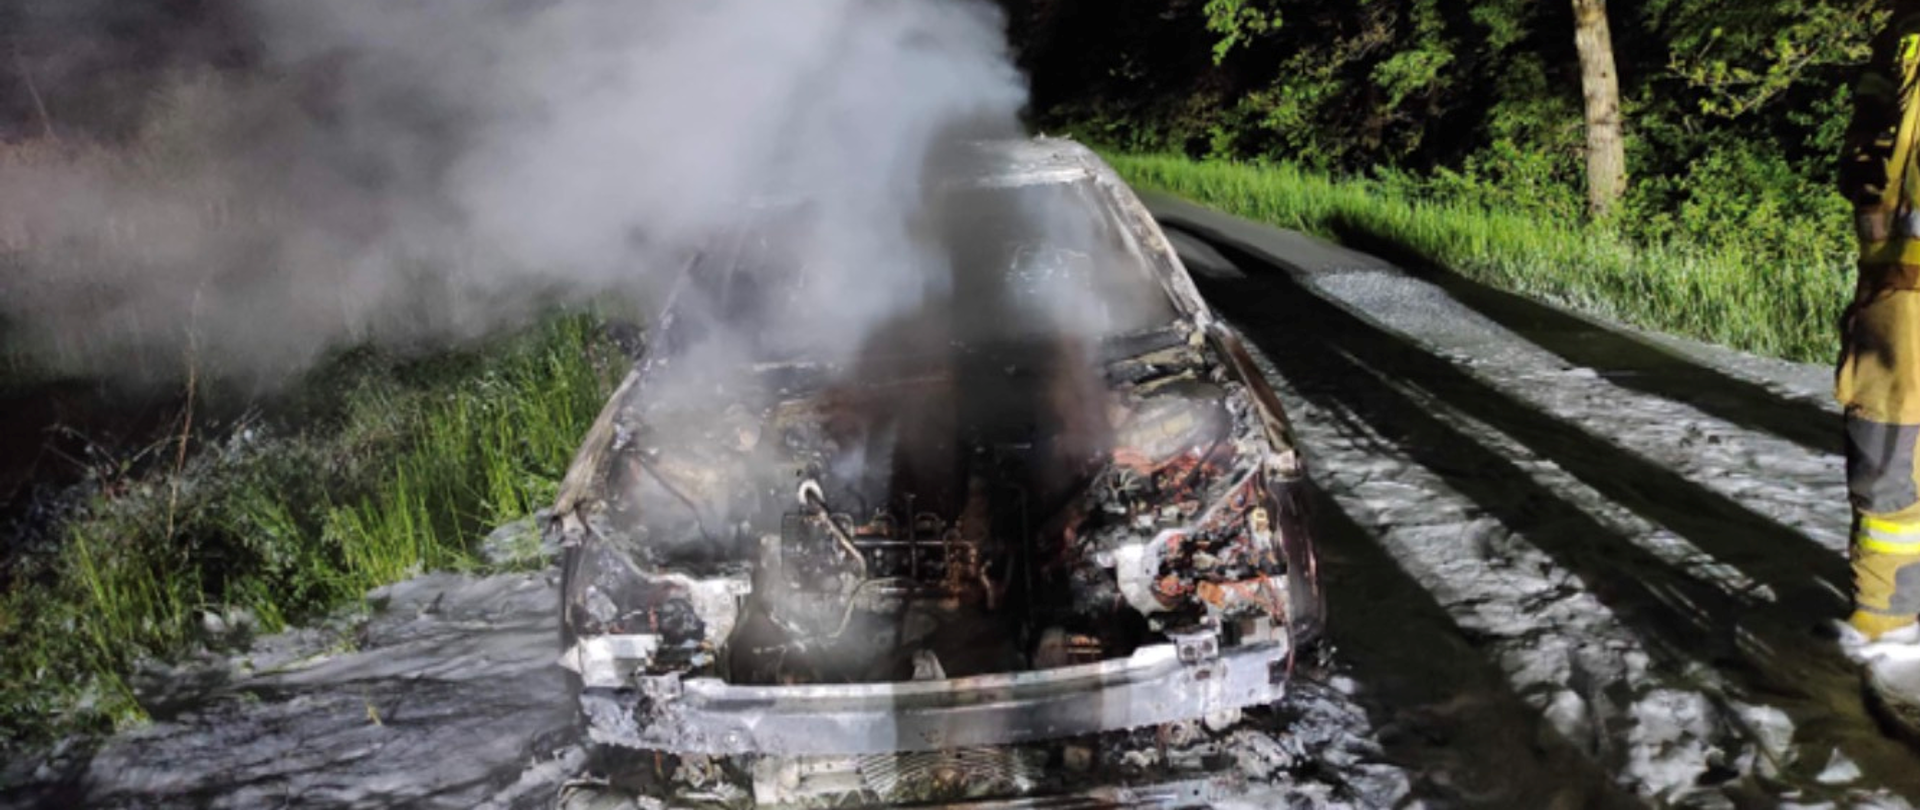 Zdjęcie przedstawia spalony samochód osobowy. Nad samochodem unosi się dym. Na jezdni pozostałości po pianie gaśniczej. Samochód całkowicie spalony